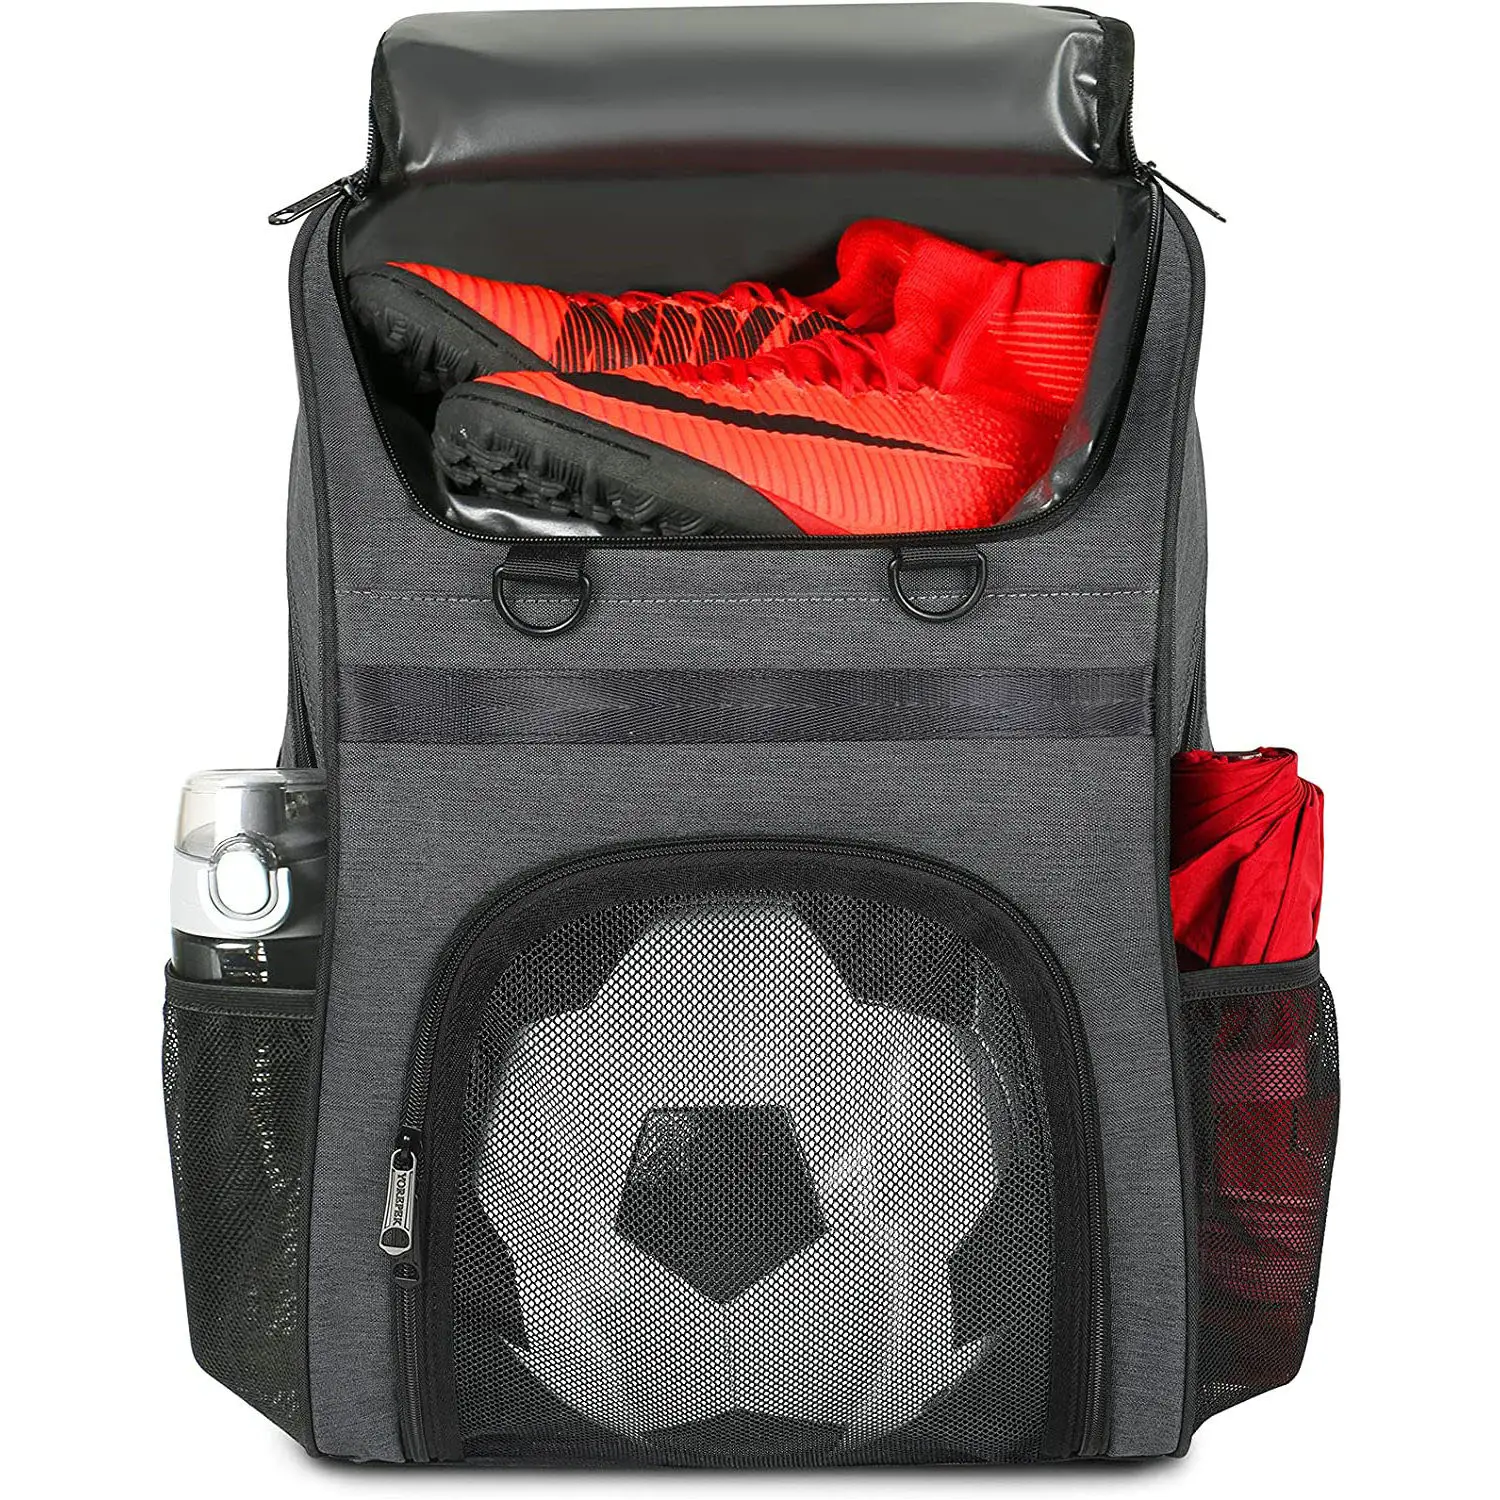 Bolsas de equipo deportivo juvenil personalizadas, mochila grande para entrenamiento, gimnasio, baloncesto, voleibol, fútbol, con compartimento para zapatos